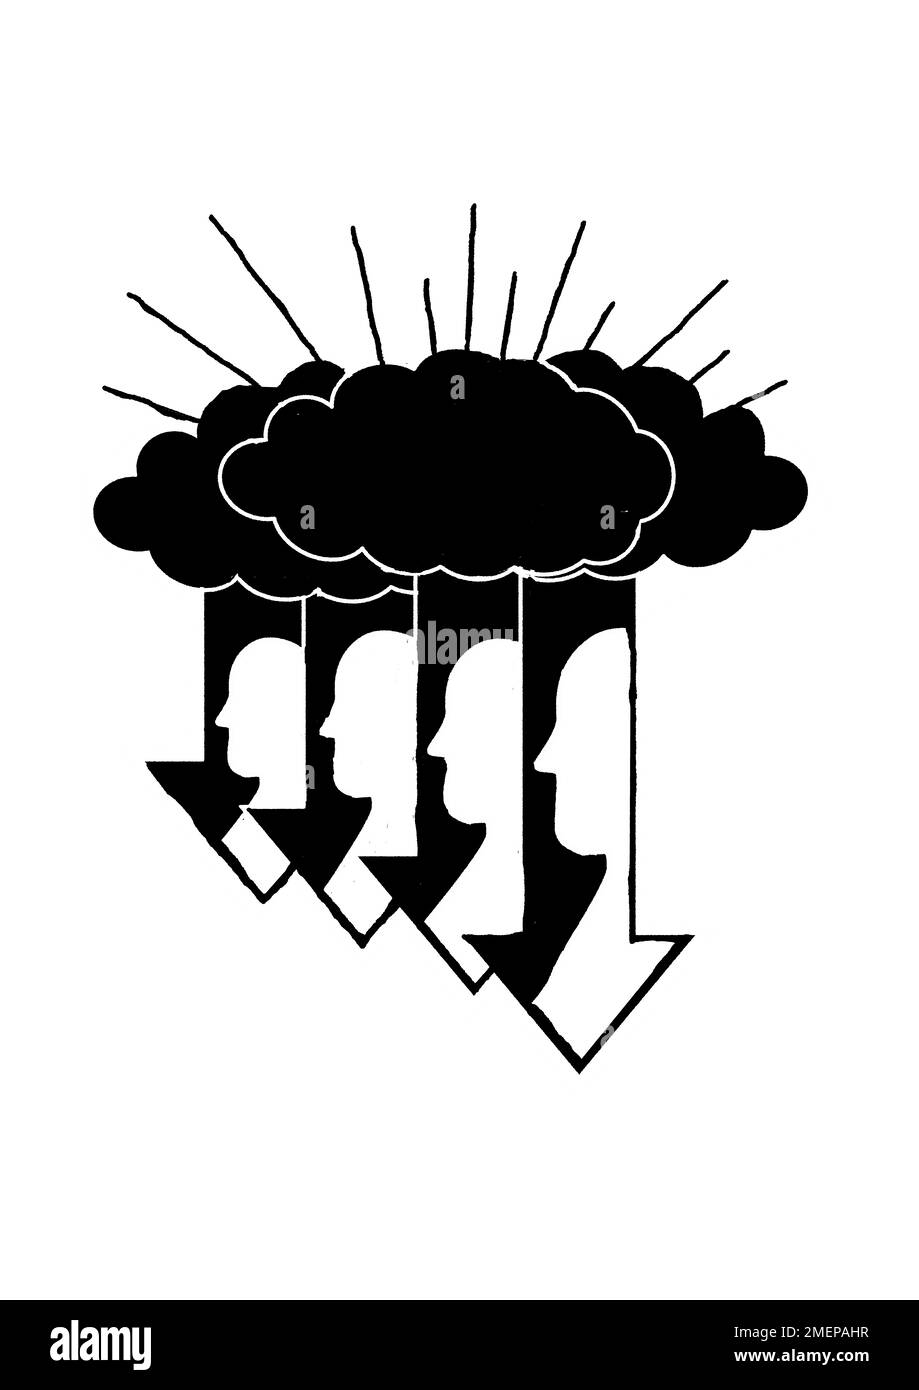 Illustrazione che mostra quattro frecce che scendono dalle nuvole, con un profilo laterale di una faccia nelle frecce. Foto Stock